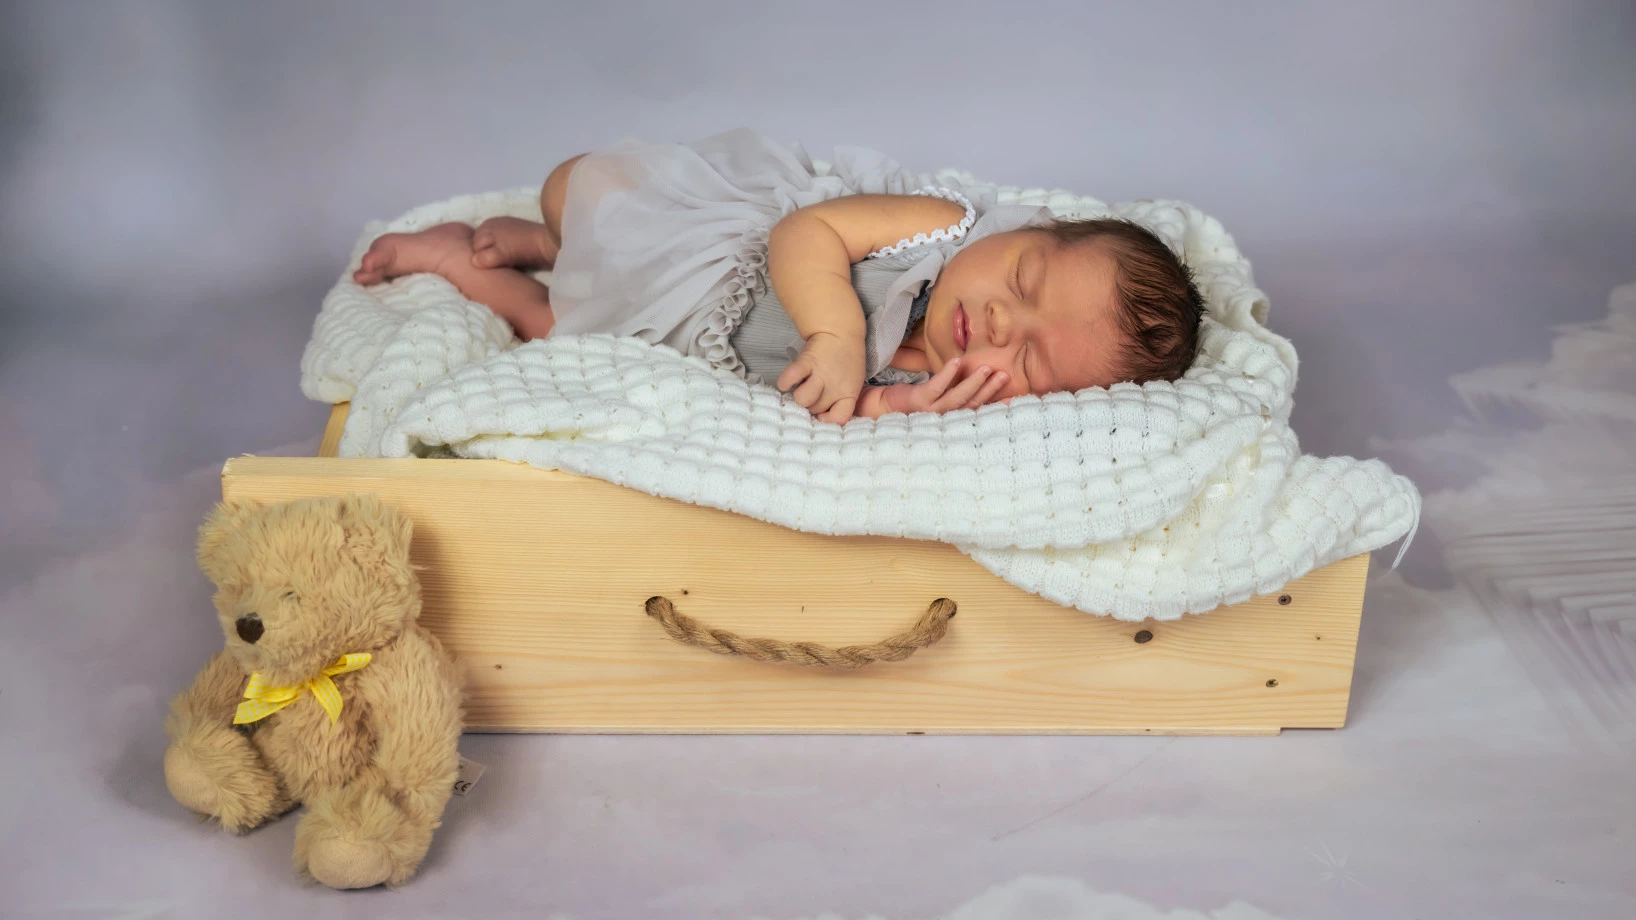 fotograf krakow anna-potepa-photography portfolio zdjecia noworodkow sesje noworodkowe niemowlę